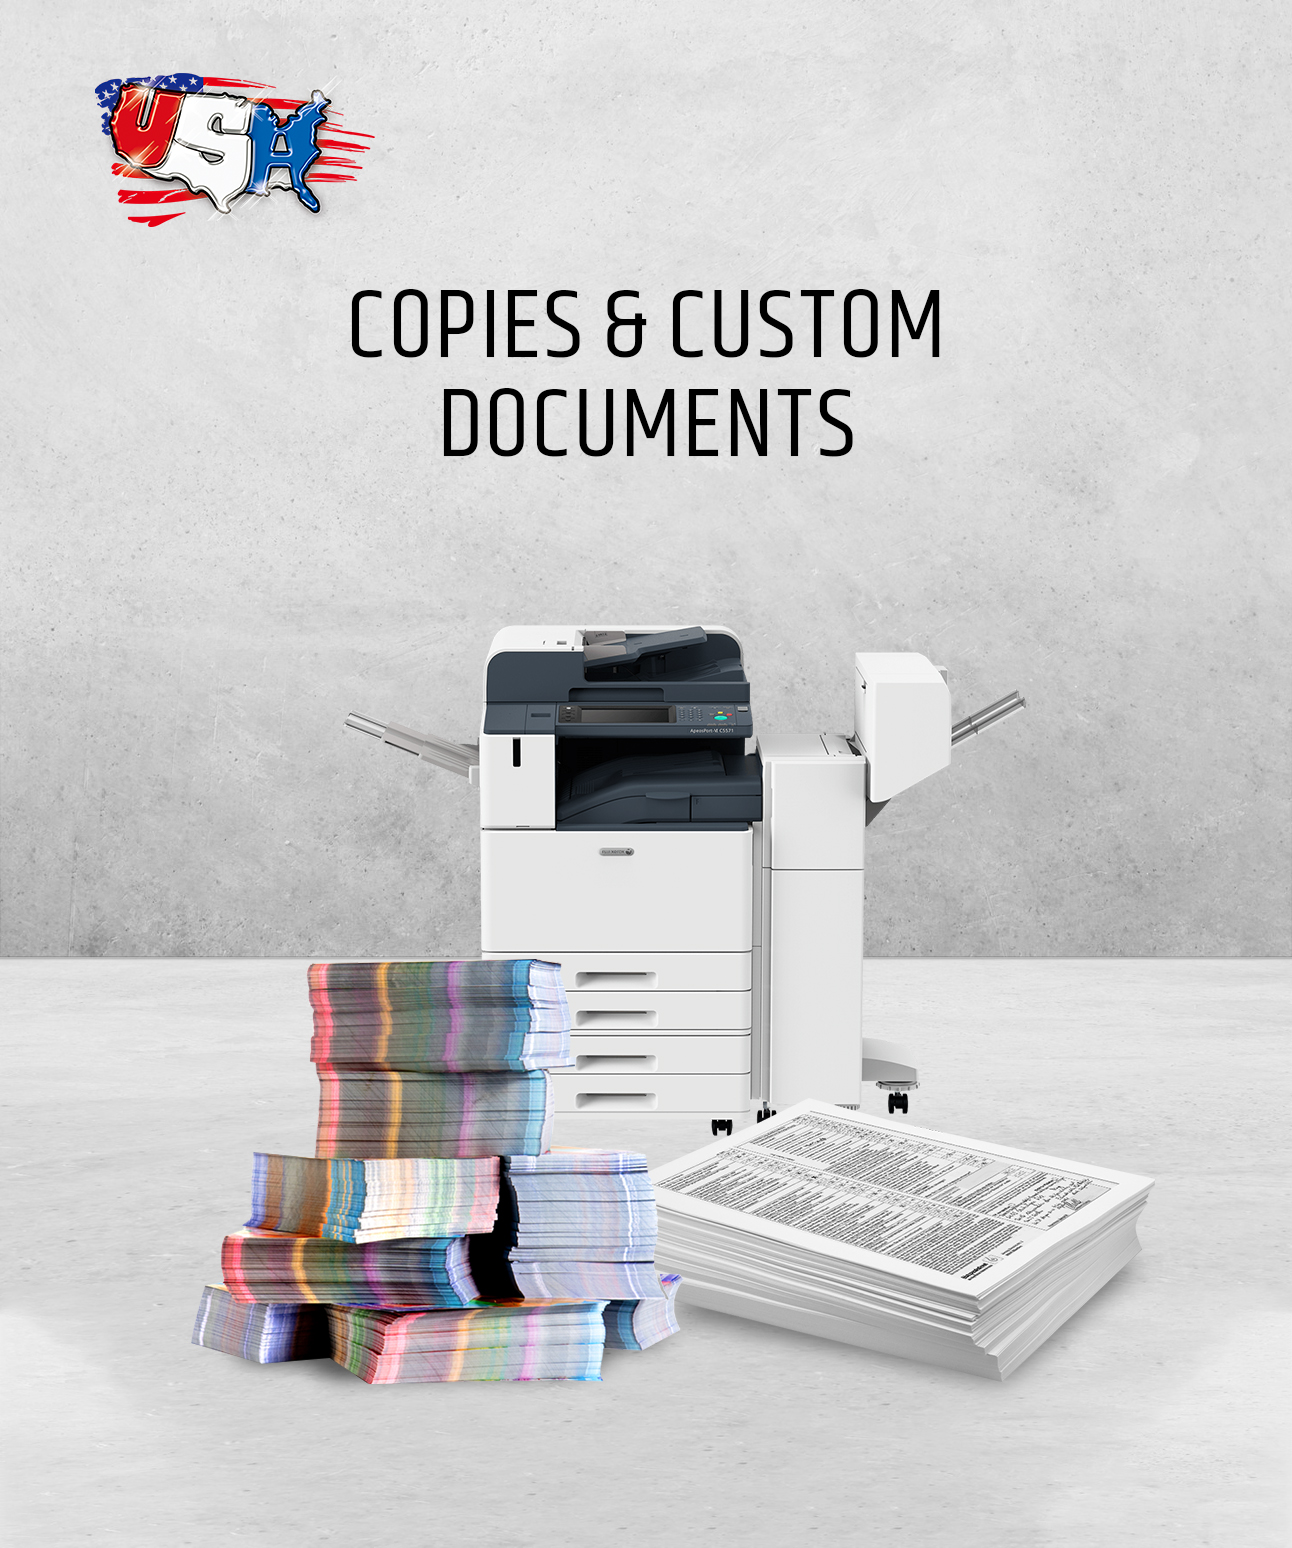 Copies & Custom Documents